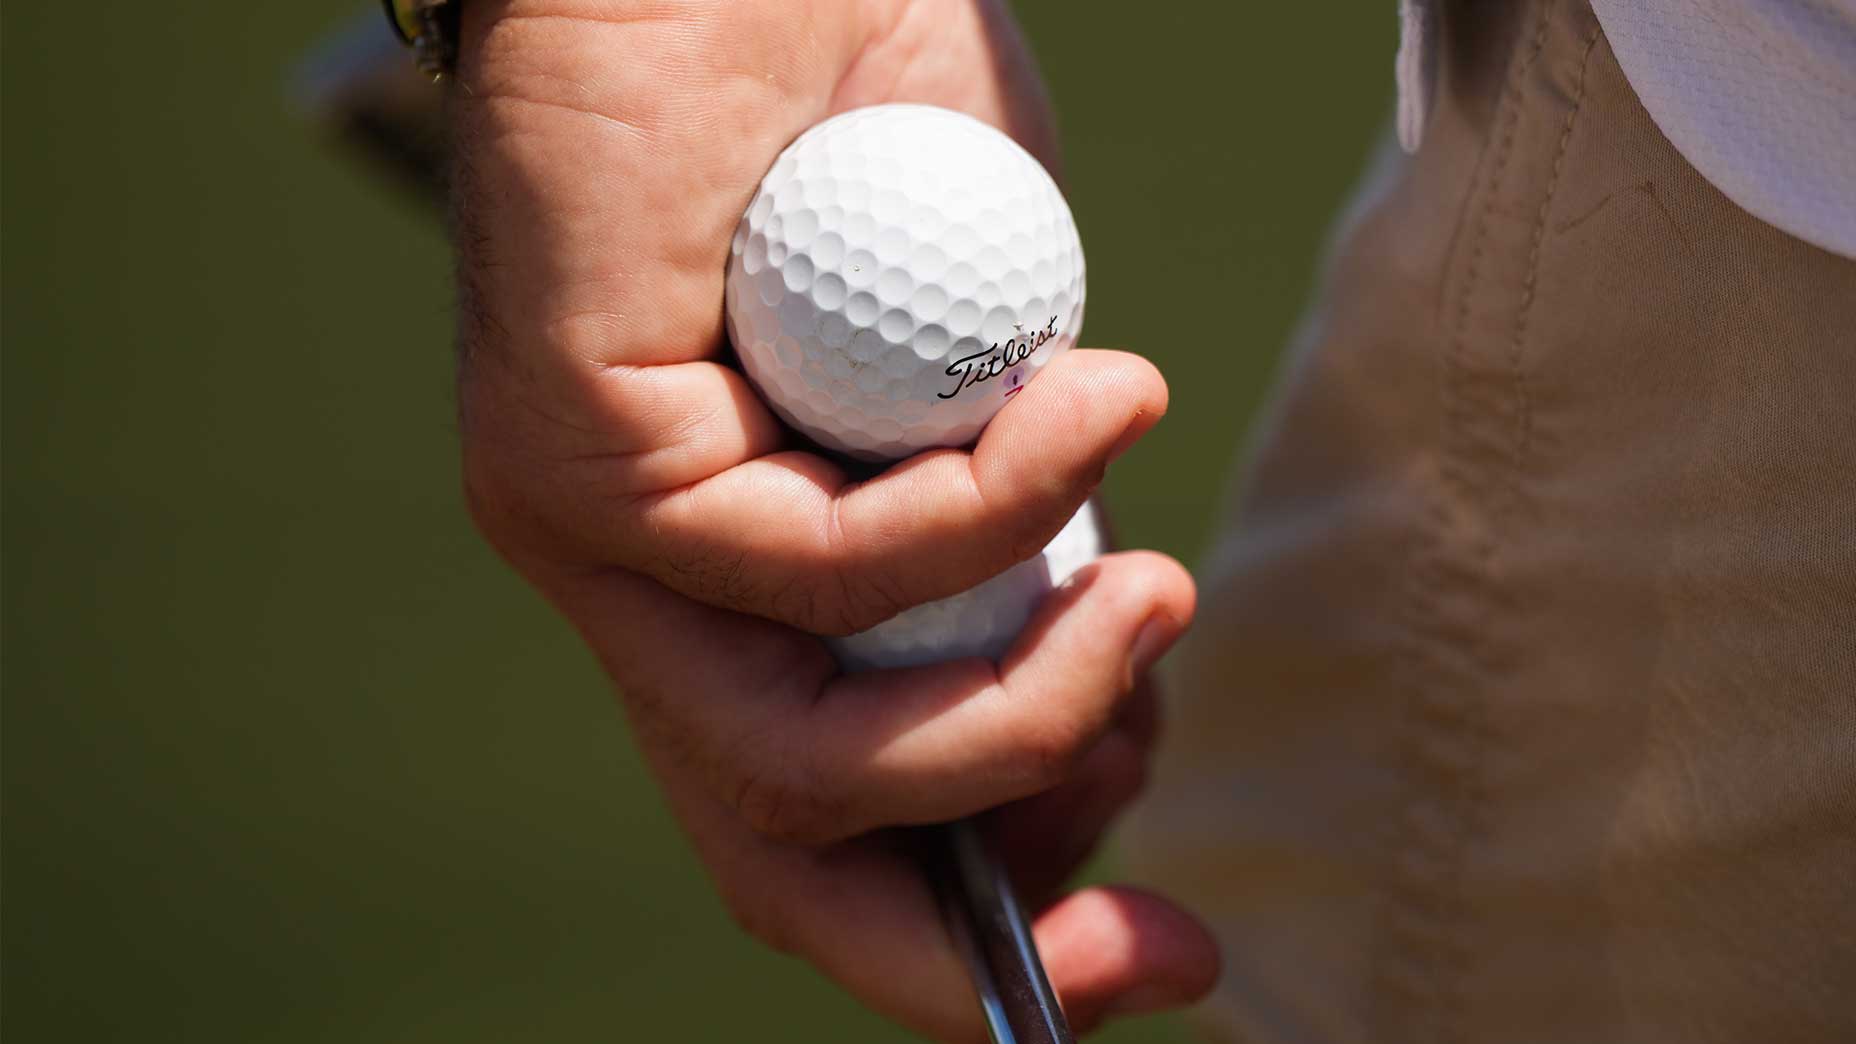 A titled golf ball